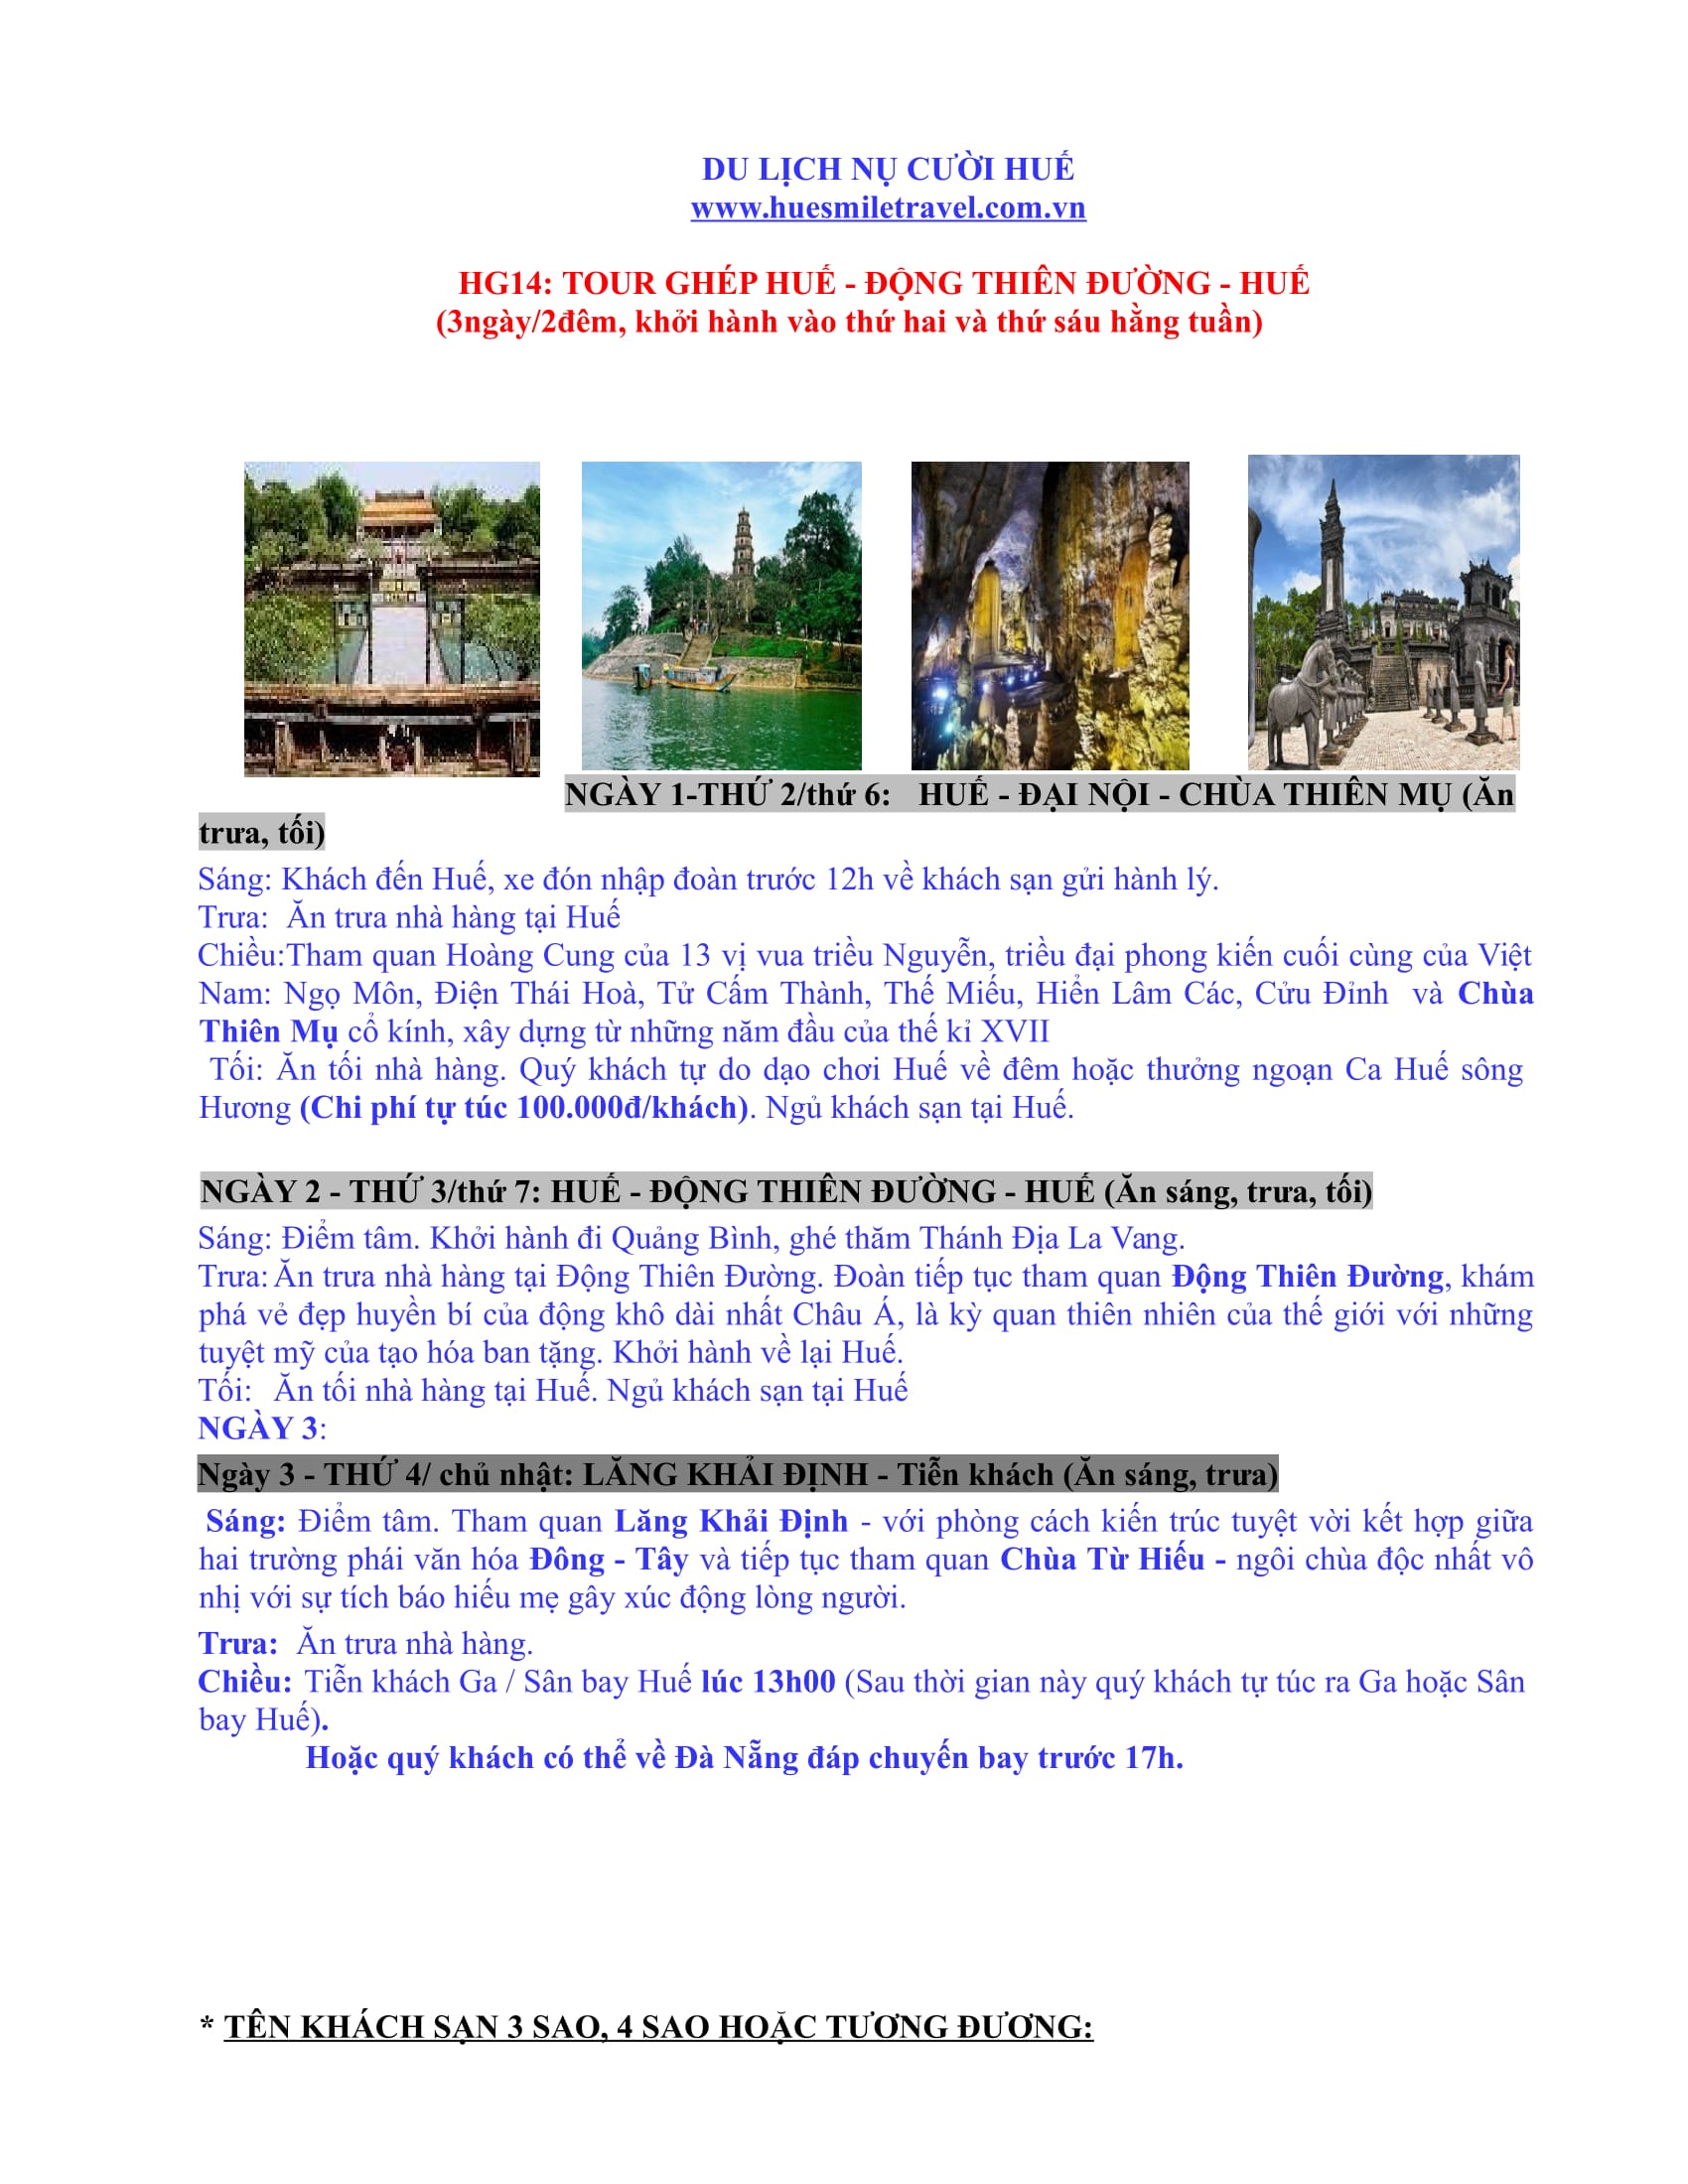 Tour ghép Huế - Động Thiên Đường - Huế - Huế Smile Travel - Công Ty TNHH Thương Mại Và Du Lịch Nụ Cười Huế